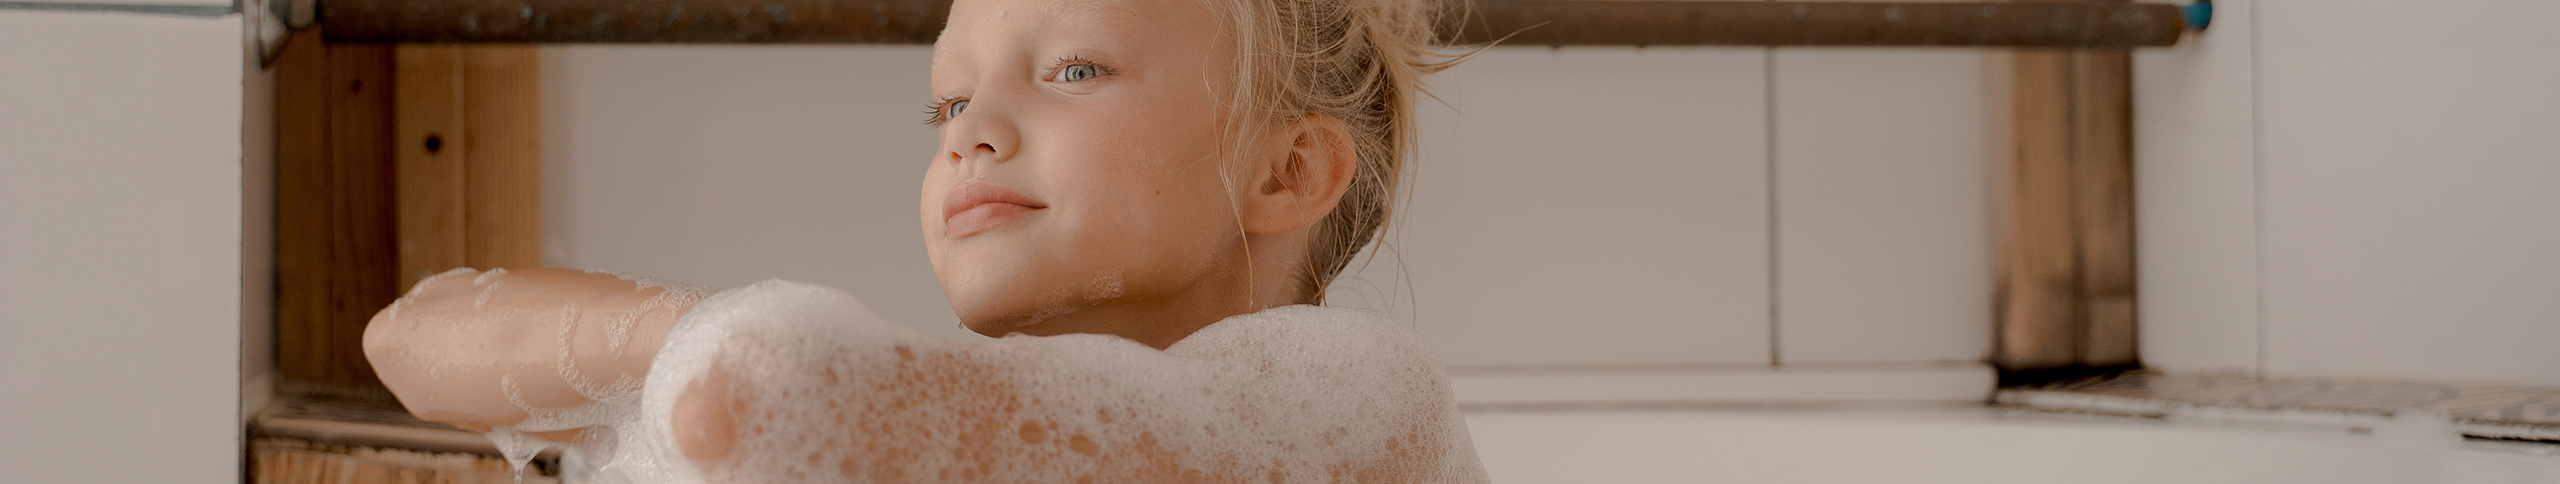 Cómo enseñar hábitos de higiene íntima a las niñas